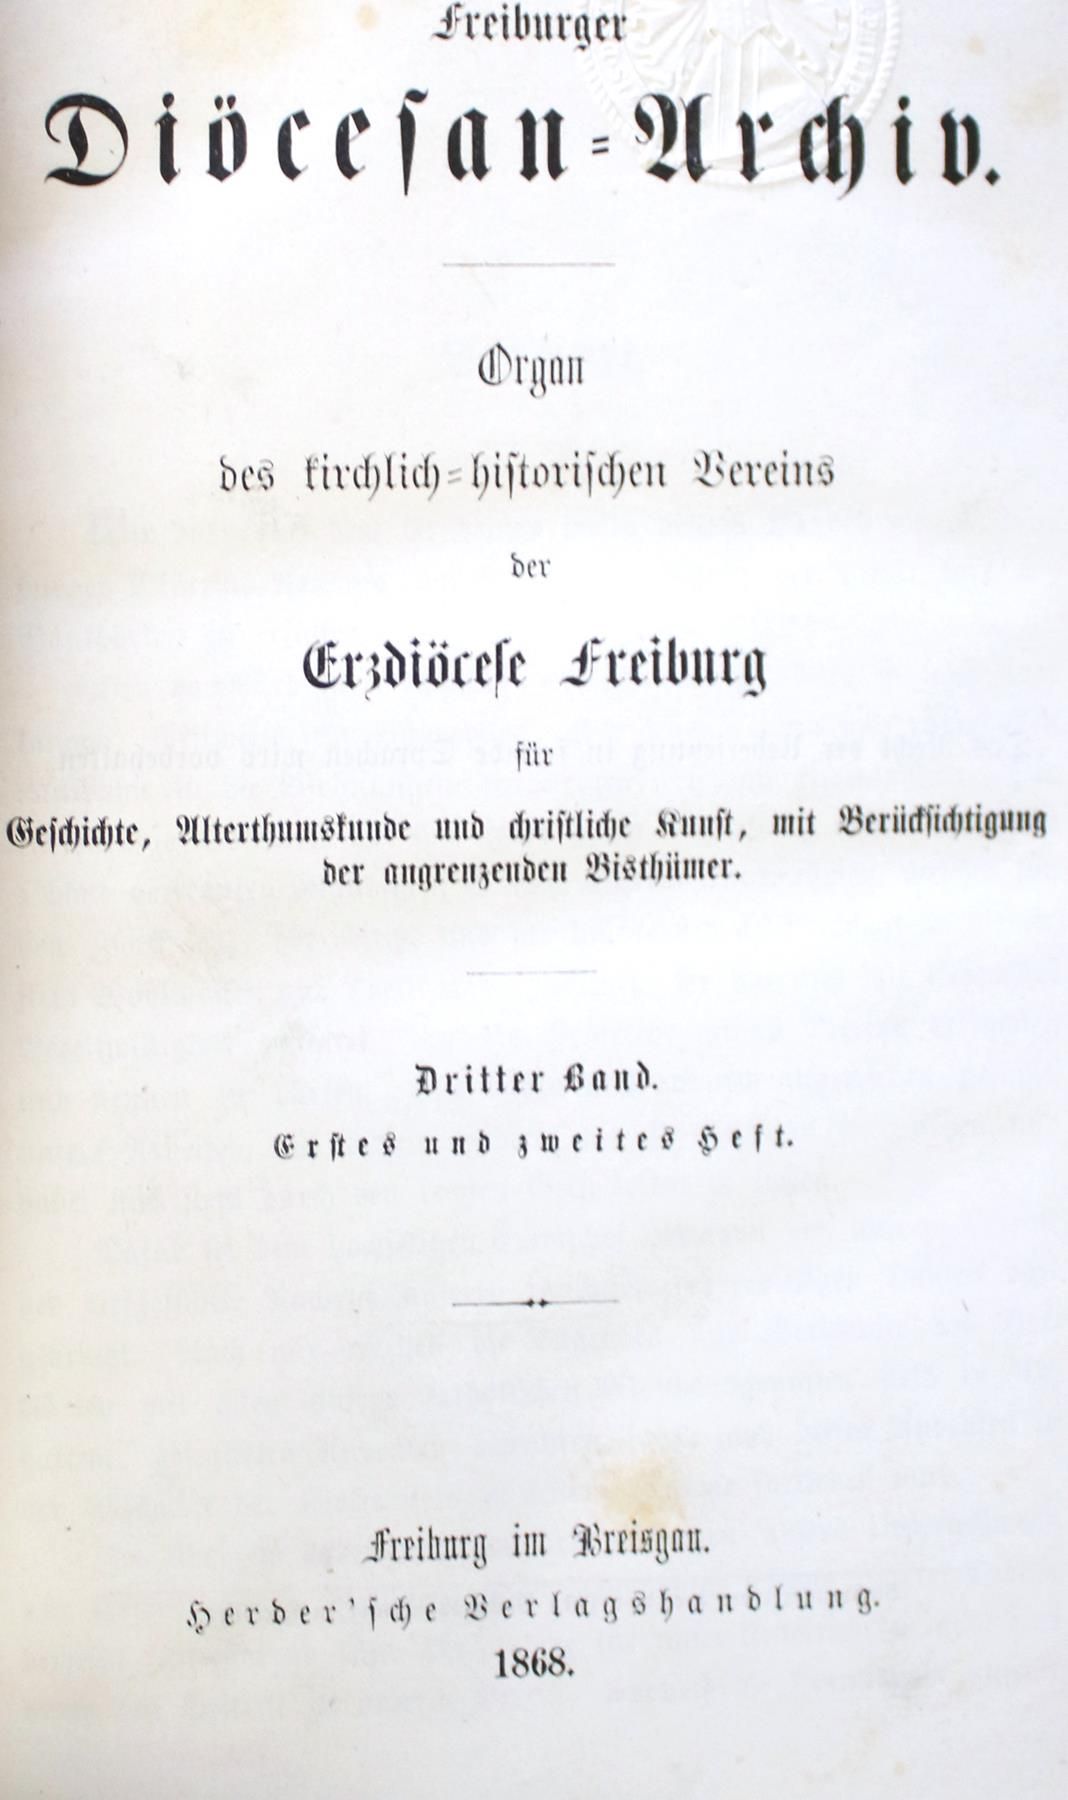 Freiburger Diöcesan-Archiv. Organe de la Société ecclésiastique et historique de&hellip;